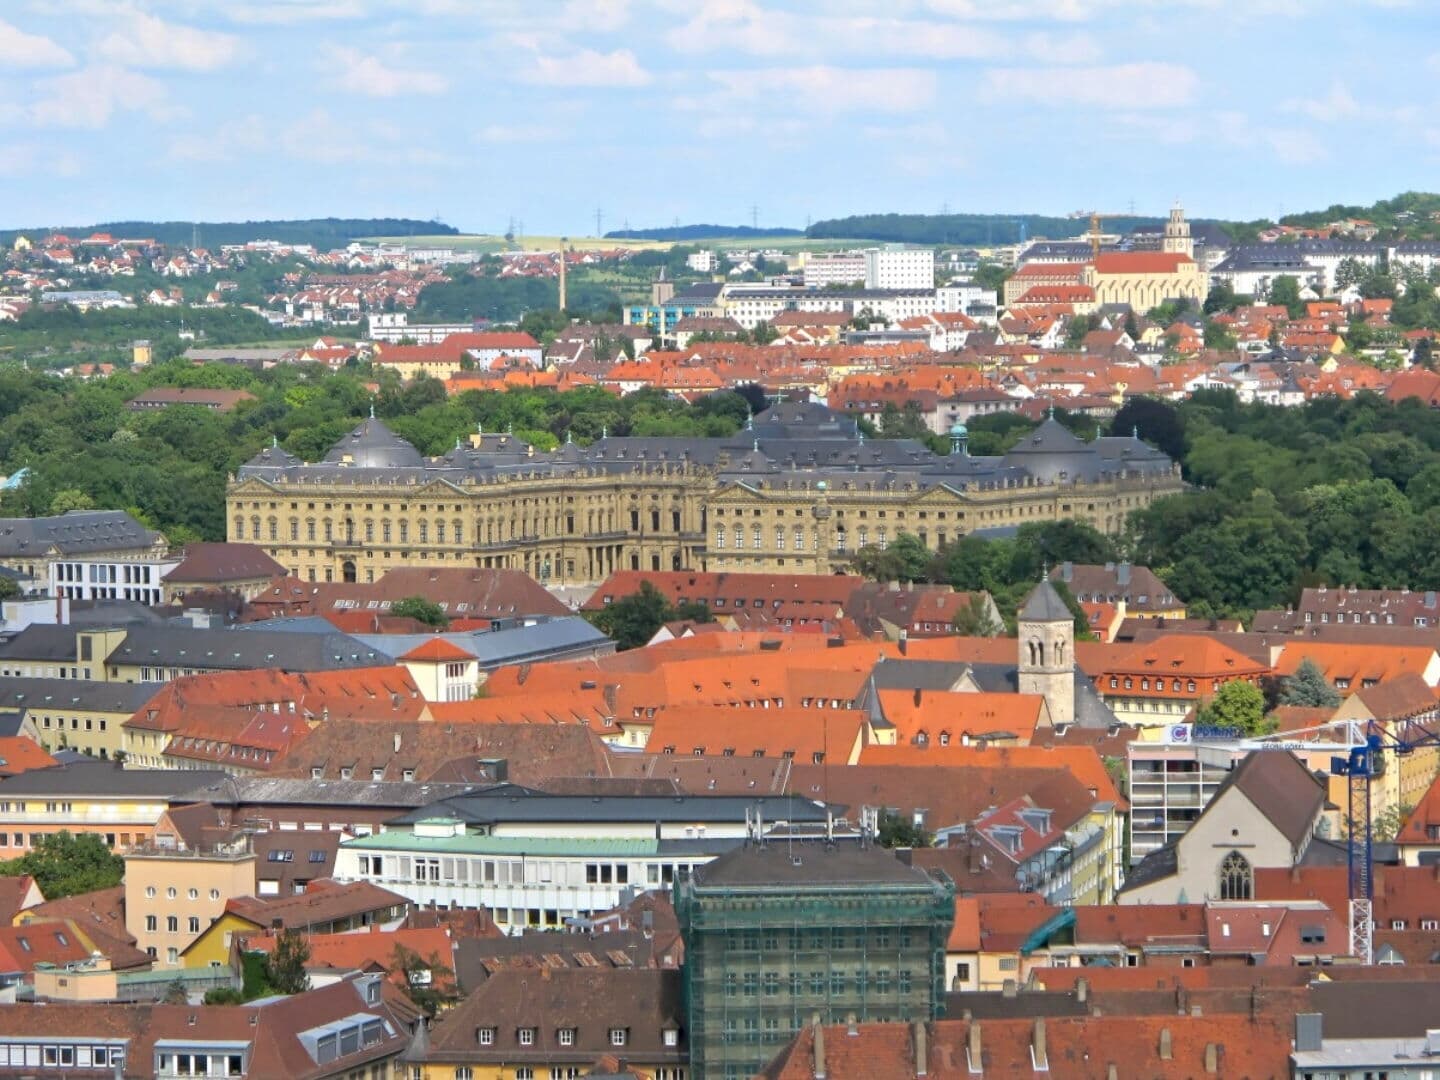 Würzburg photo